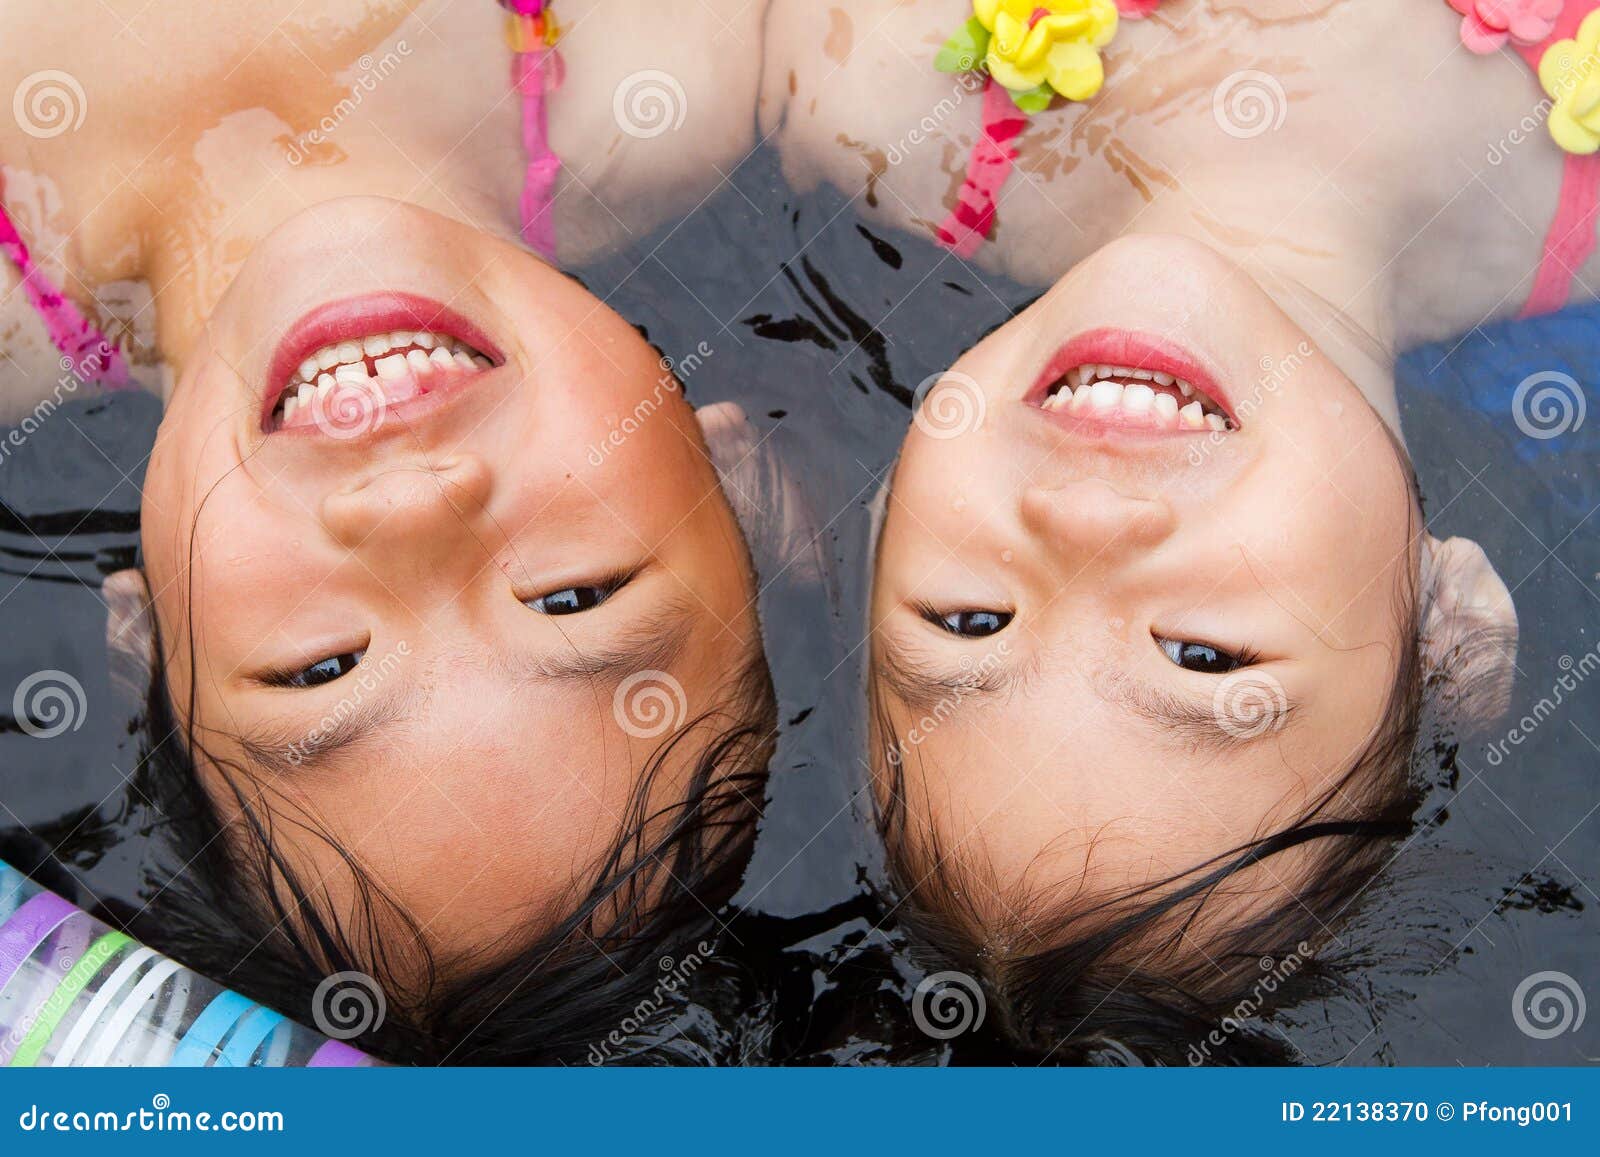 sisters at a wading pool